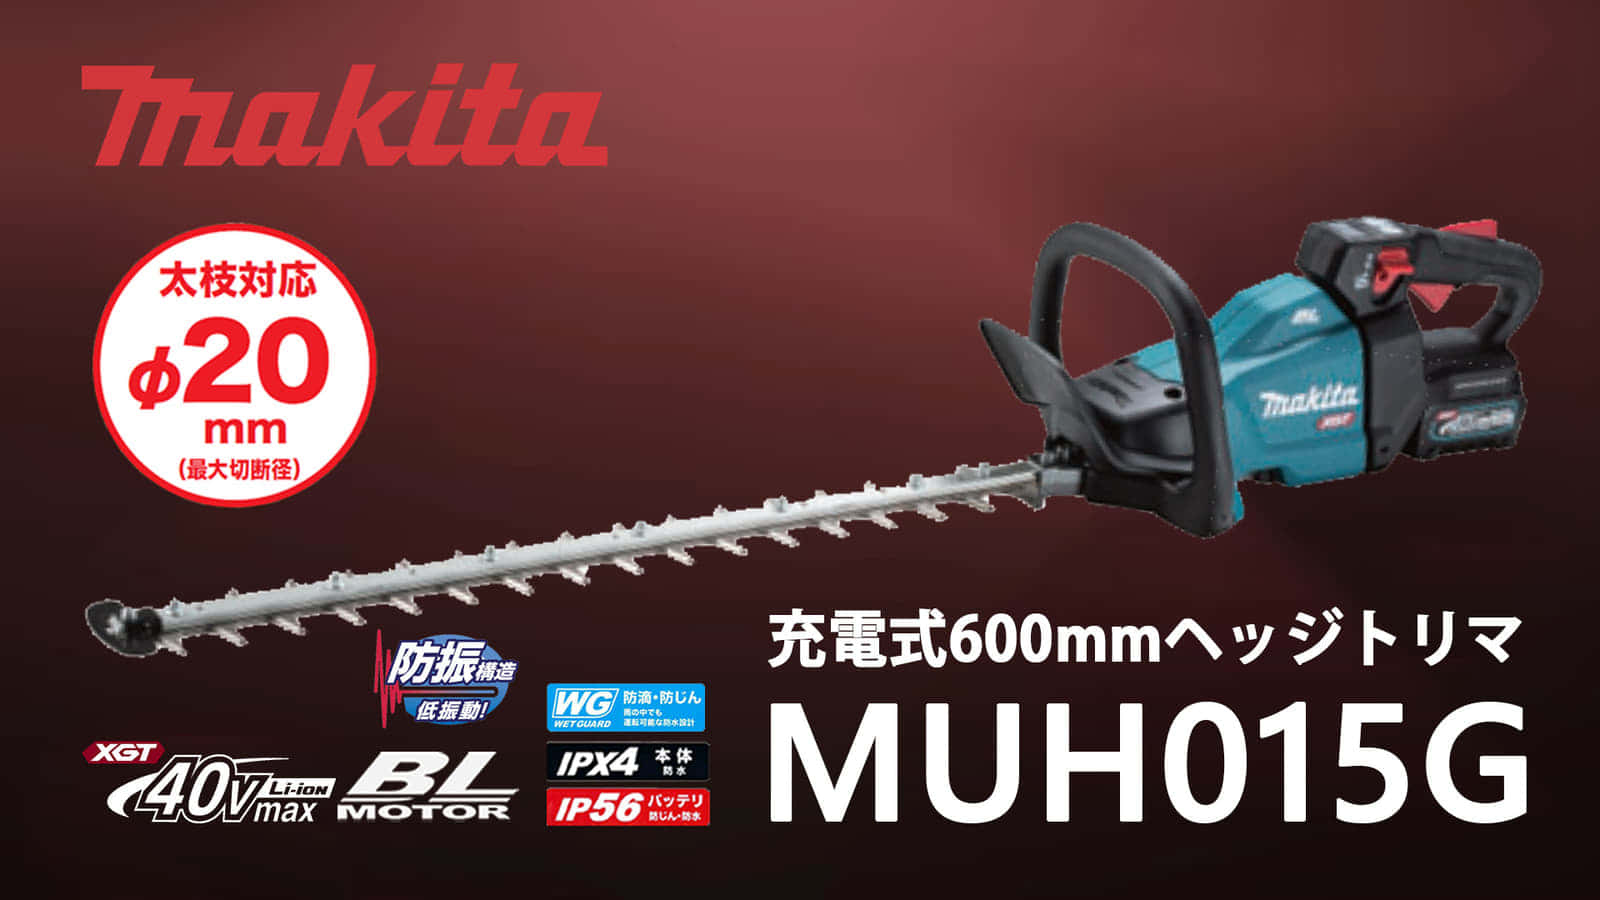 マキタ MUH015G 600mm充電式ヘッジトリマを発売、高トルク・厚刃のラフカット仕様